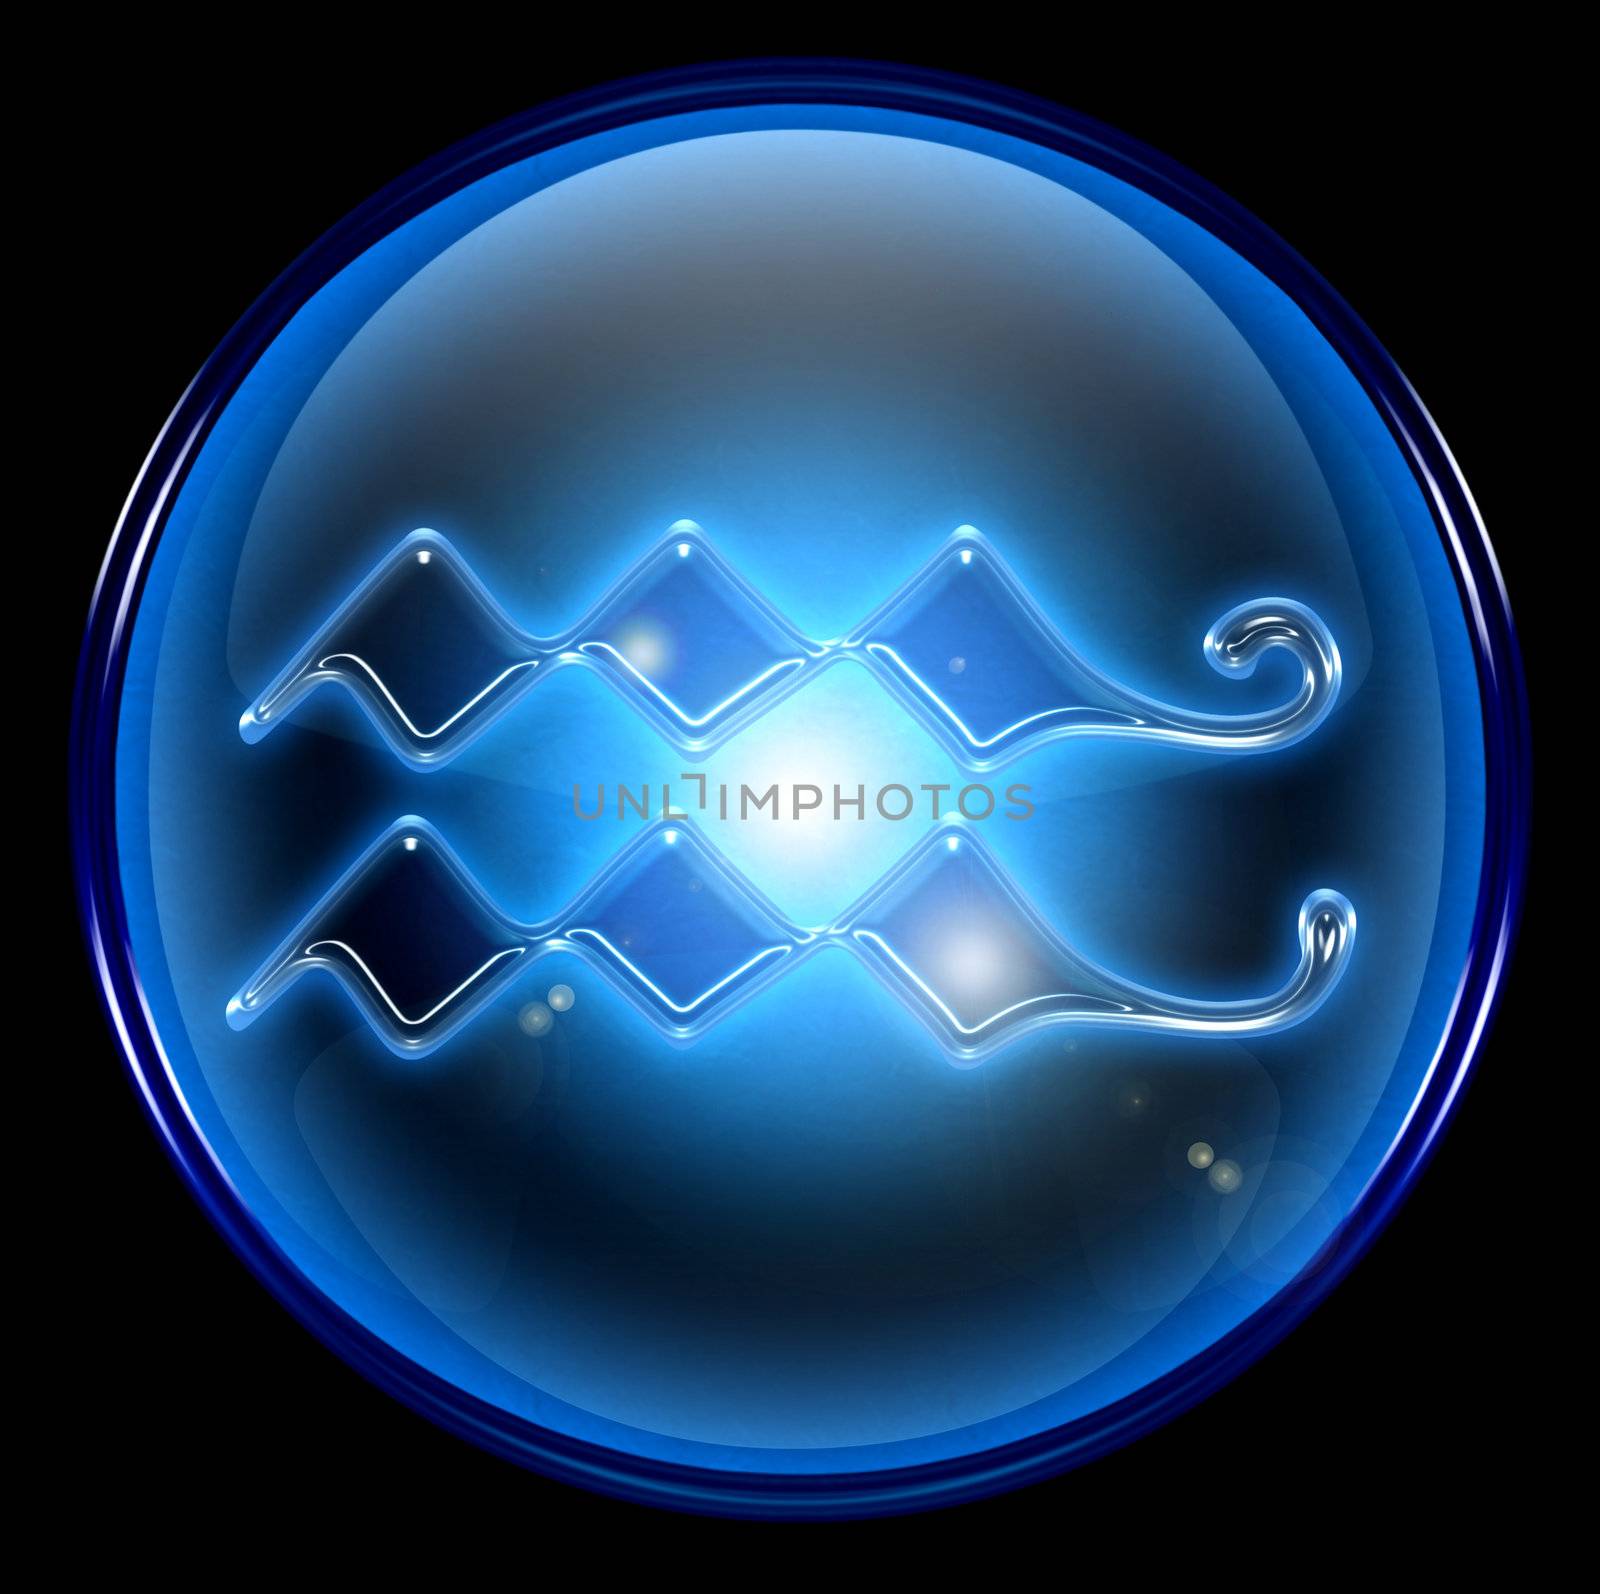 Aquarius zodiac button icon, isolated on black background.